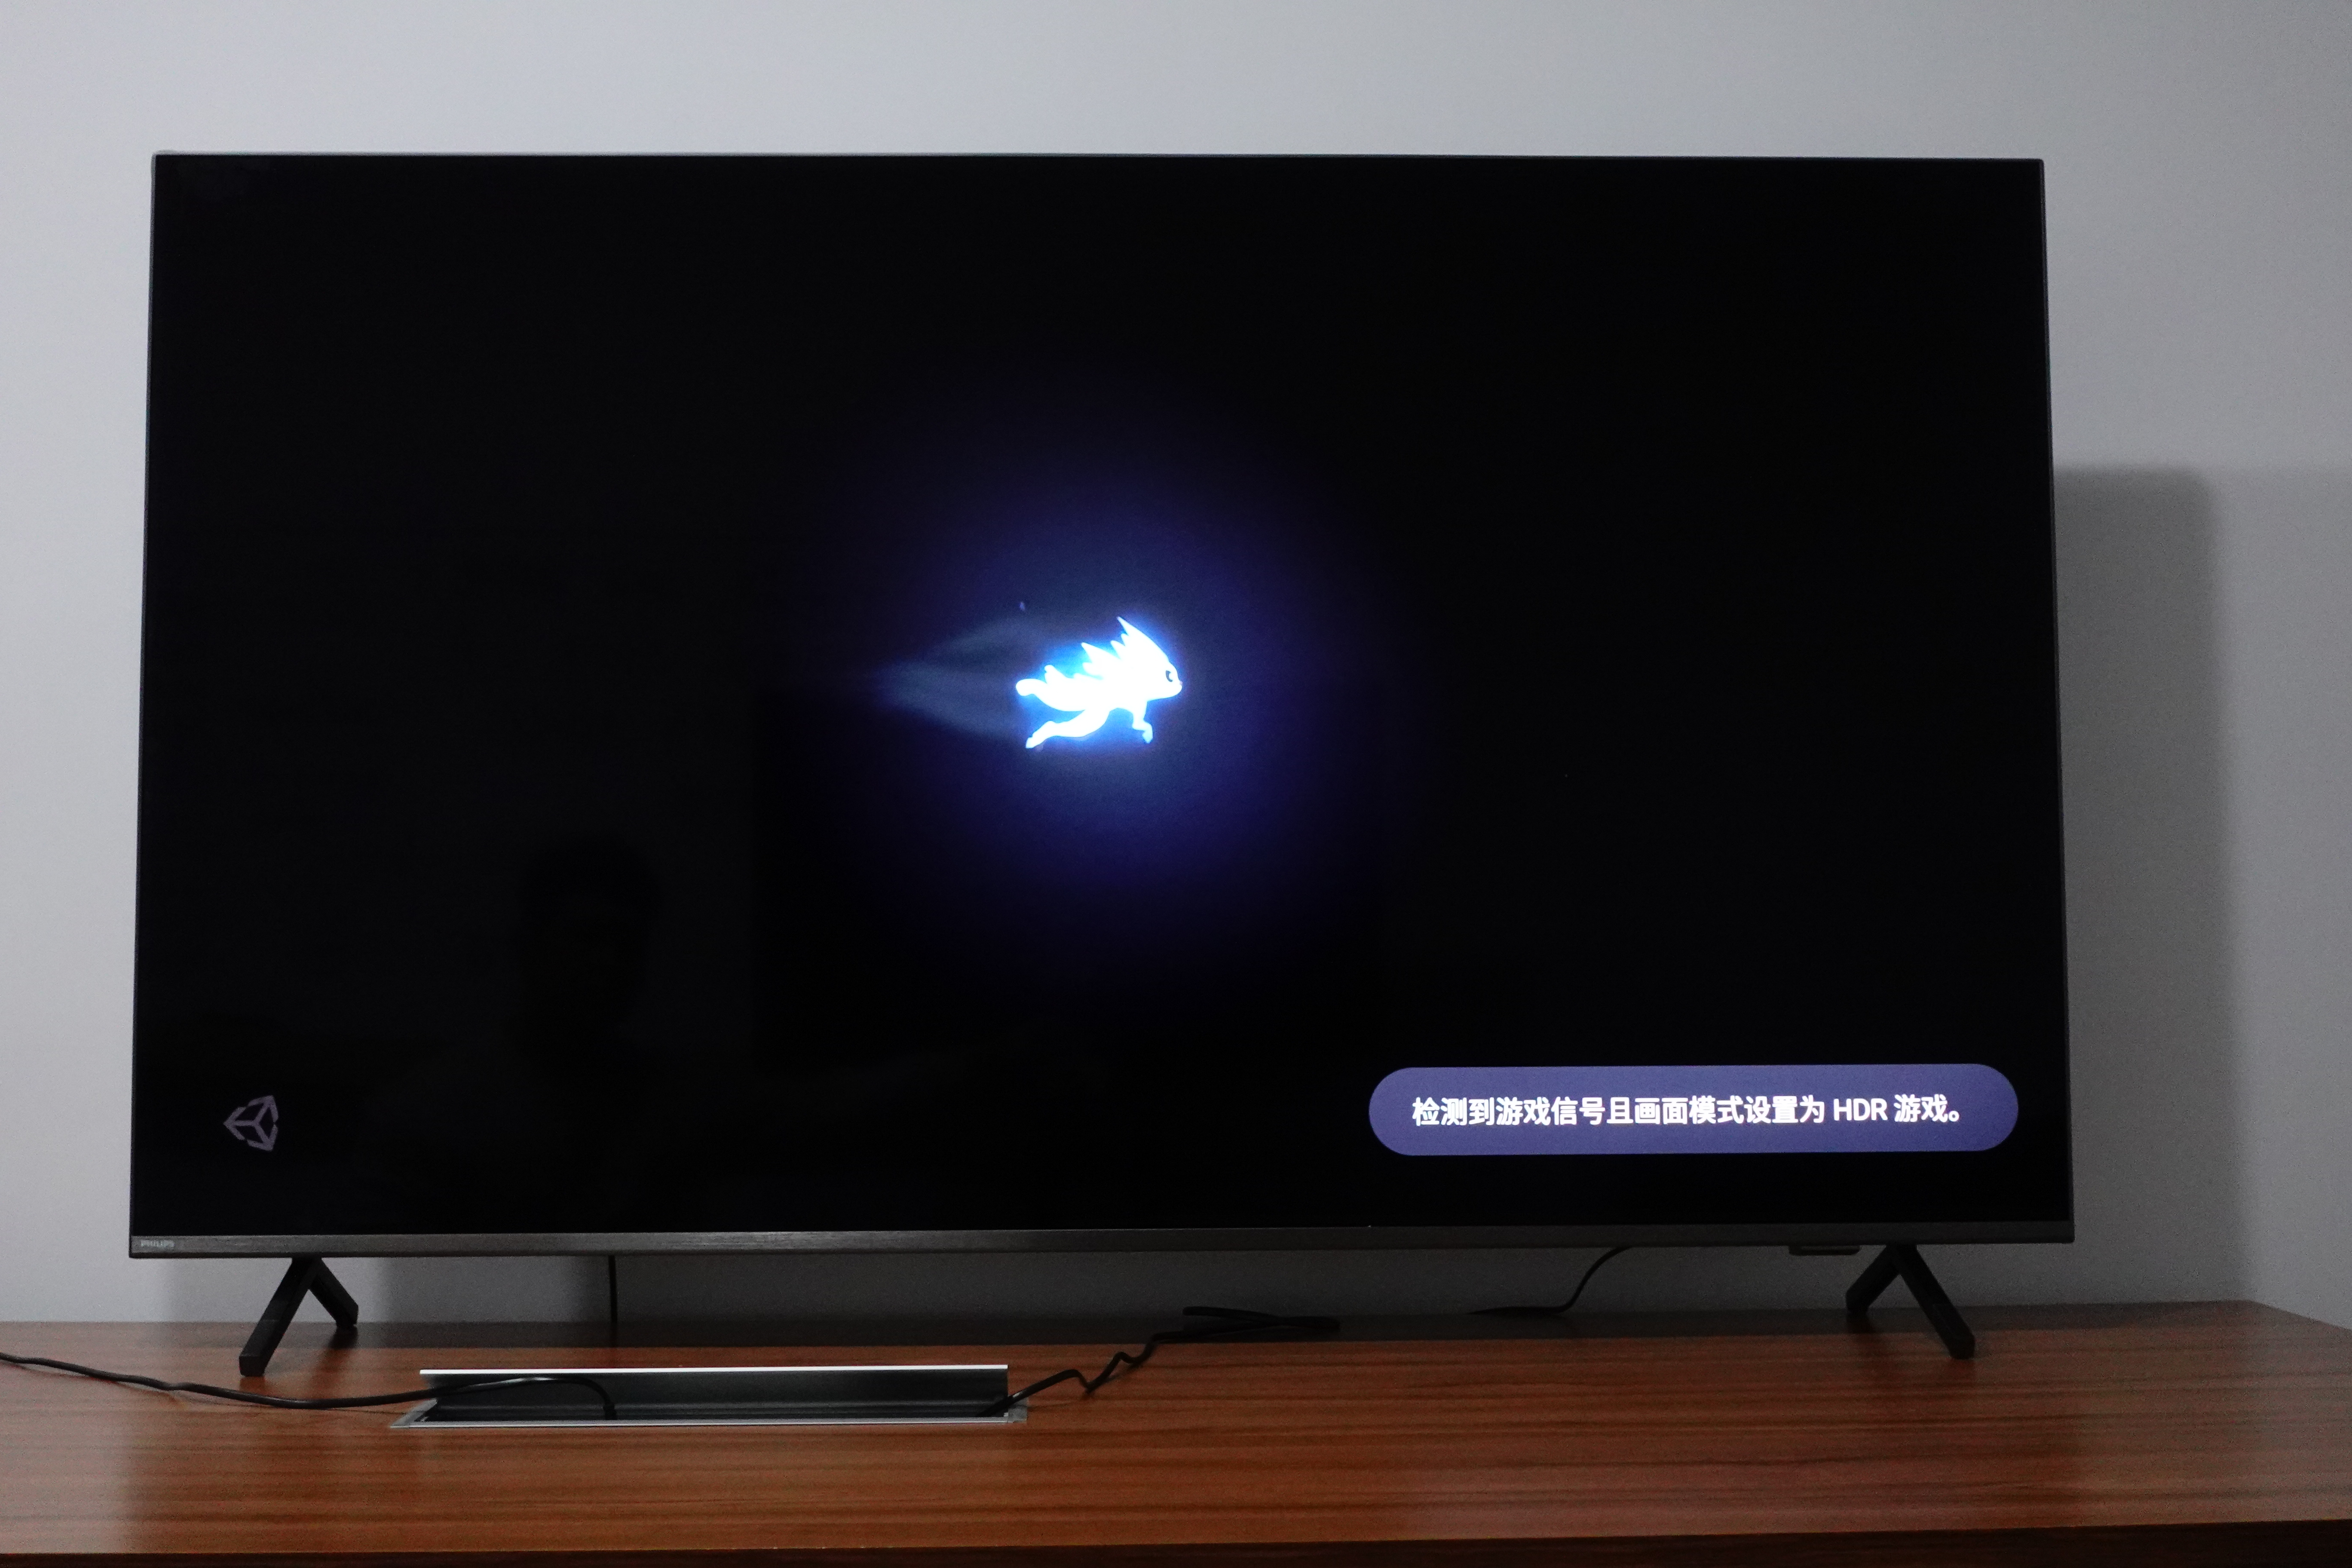 拥有 HDR 功能的游戏在启动后，电视也会自动开启 HDR